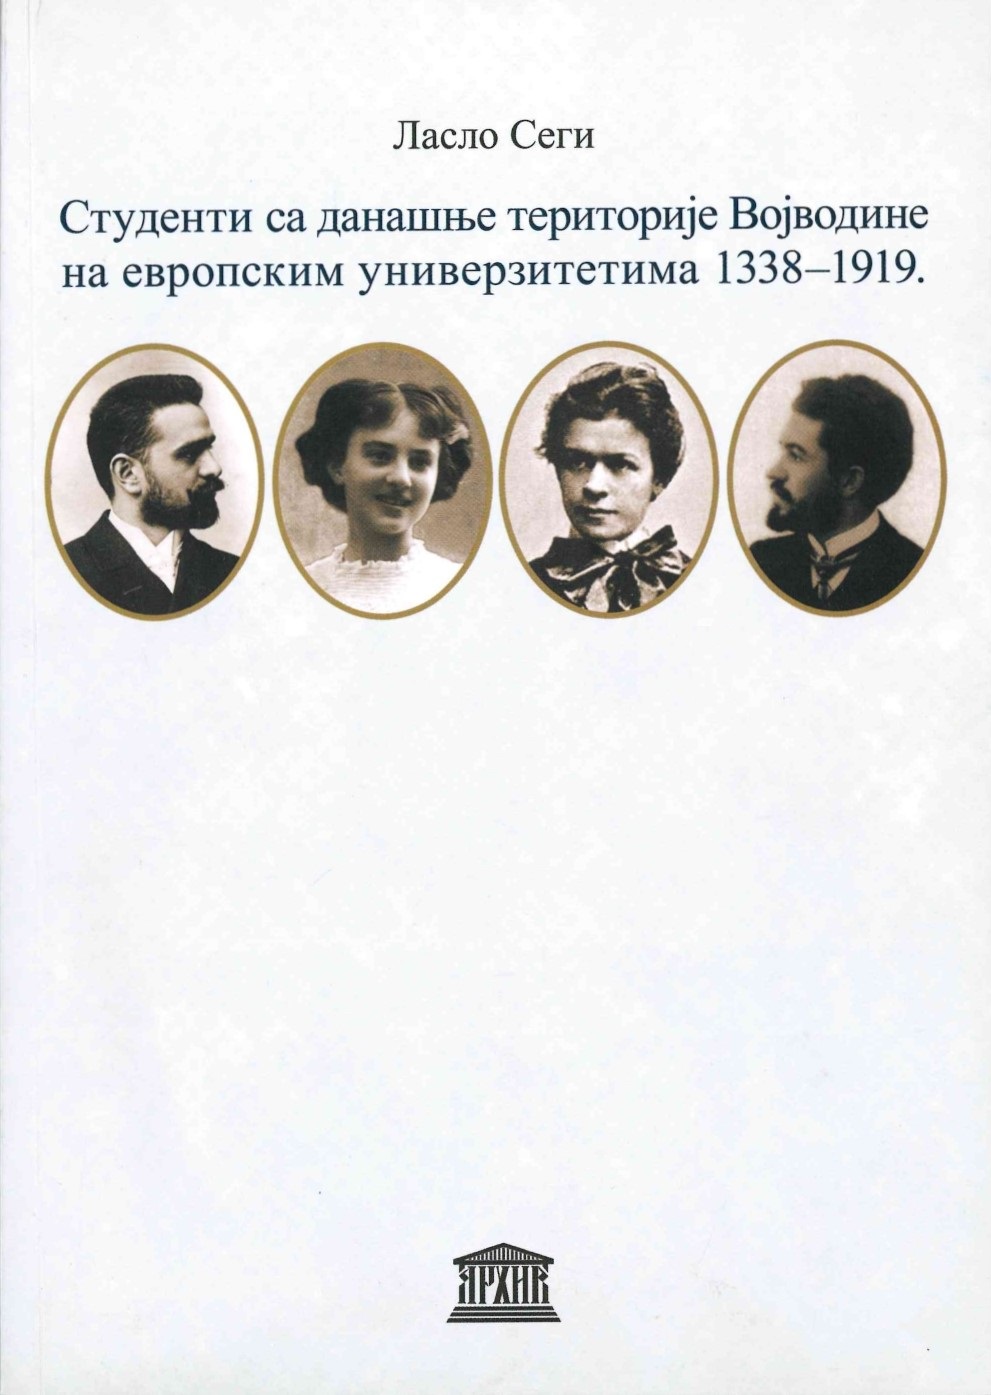 Сеги, Ласло: Студенти са данашње територије Војводине на европским универзитетима 1338–1919, Архив Војводине, Нови Сад 2010.